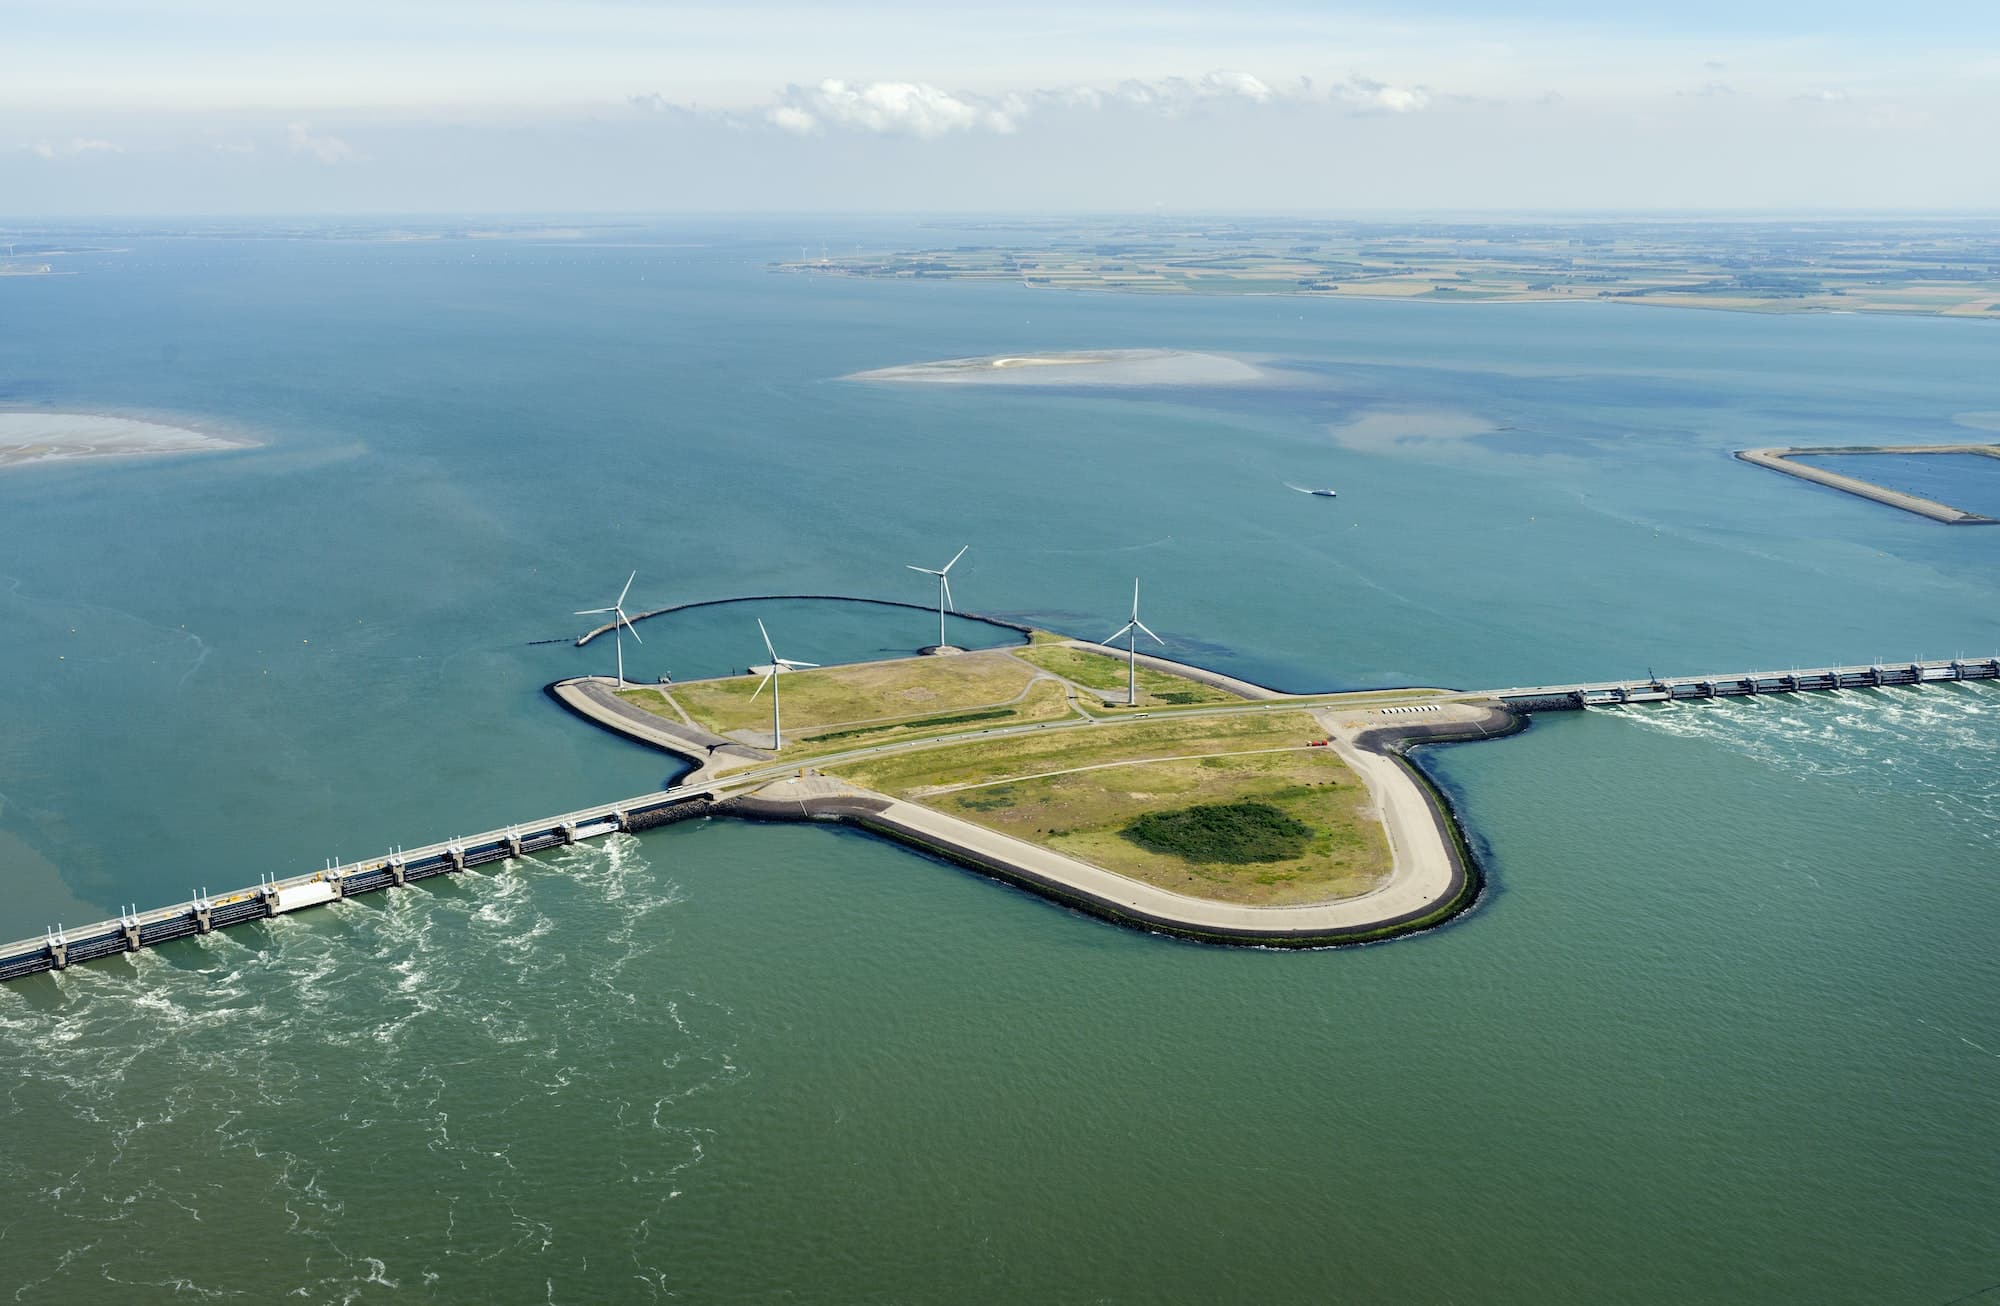 Oosterschelde flood barrier and wind turbines, Vrouwenpolder, Netherlands